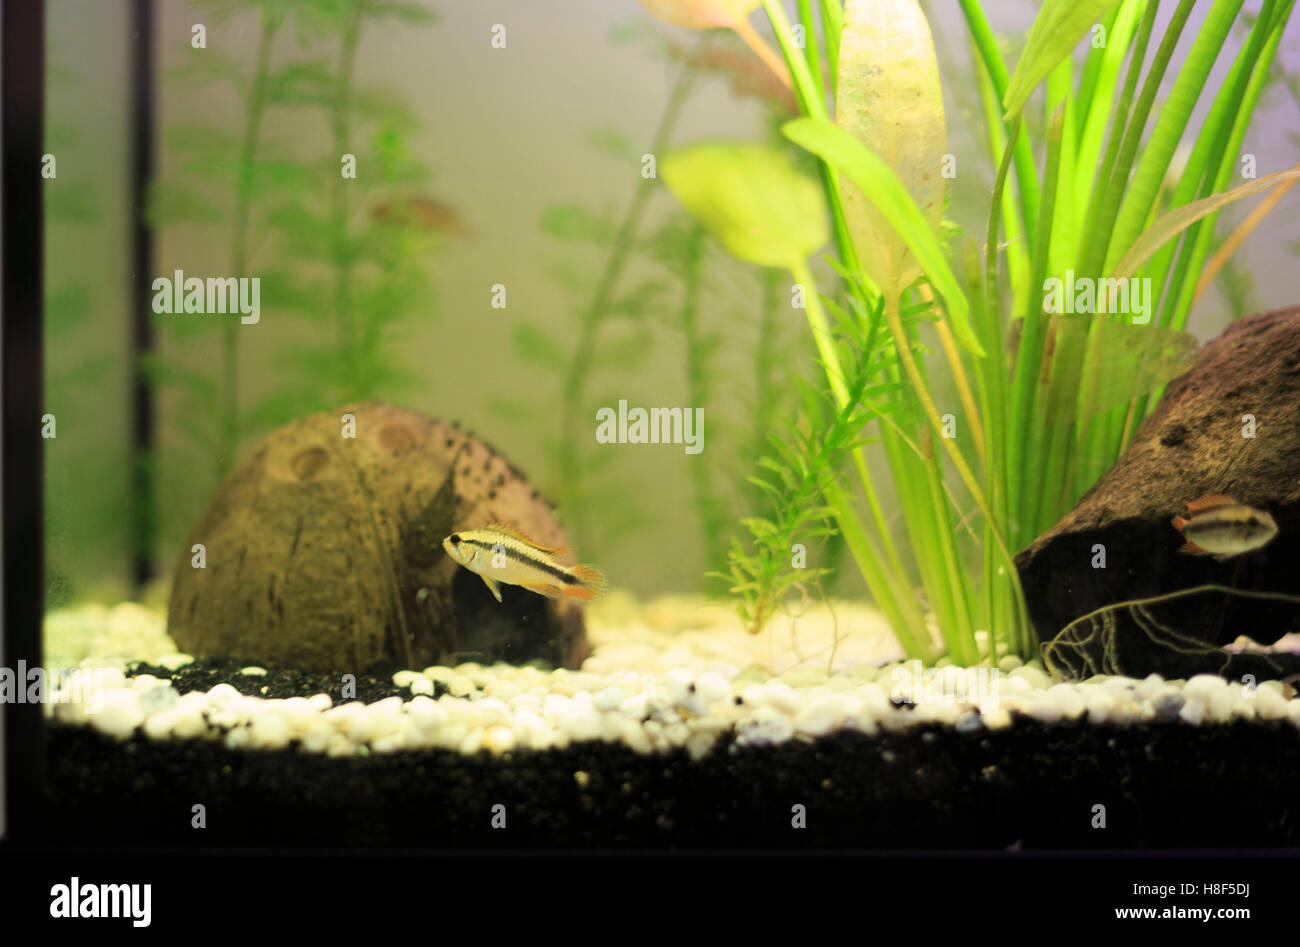 Cichlid in aquarium Stock Photo